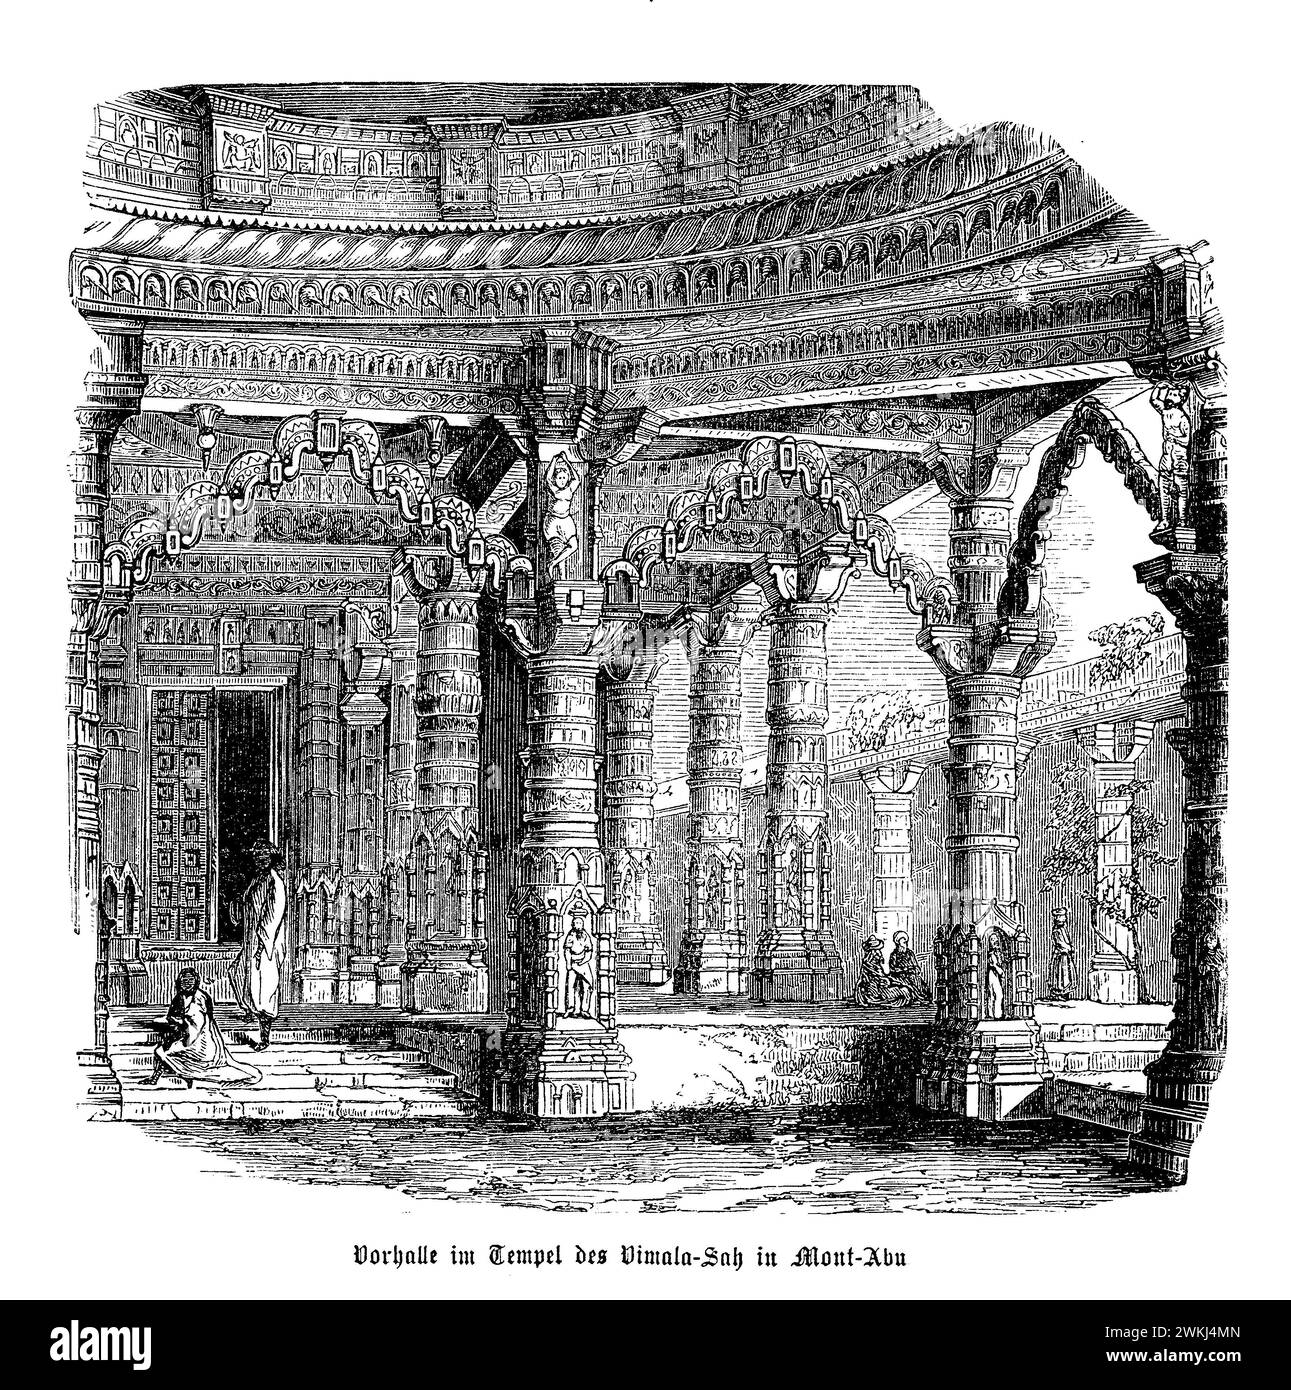 Die Eingangshalle des Vimala Vasahi-Tempels in Mount Abu ist ein atemberaubendes Beispiel für Jain architektonische Brillanz. Der im 11. Jahrhundert errichtete Tempel (oder Mandapa) empfängt Besucher mit kunstvollen Schnitzereien und detaillierten Skulpturen, die das Leben und die Lehren von Adinatha, dem ersten Jain Tirthankara, zelebrieren. Der Saal ist mit Tafeln geschmückt, die Szenen aus Jain-Schriften darstellen, umgeben von einer Reihe wunderschön geschnitzter Säulen, die die Struktur stützen. Die akribische Handwerkskunst zeigt die Hingabe der Handwerker an ihre spirituellen Überzeugungen Stockfoto